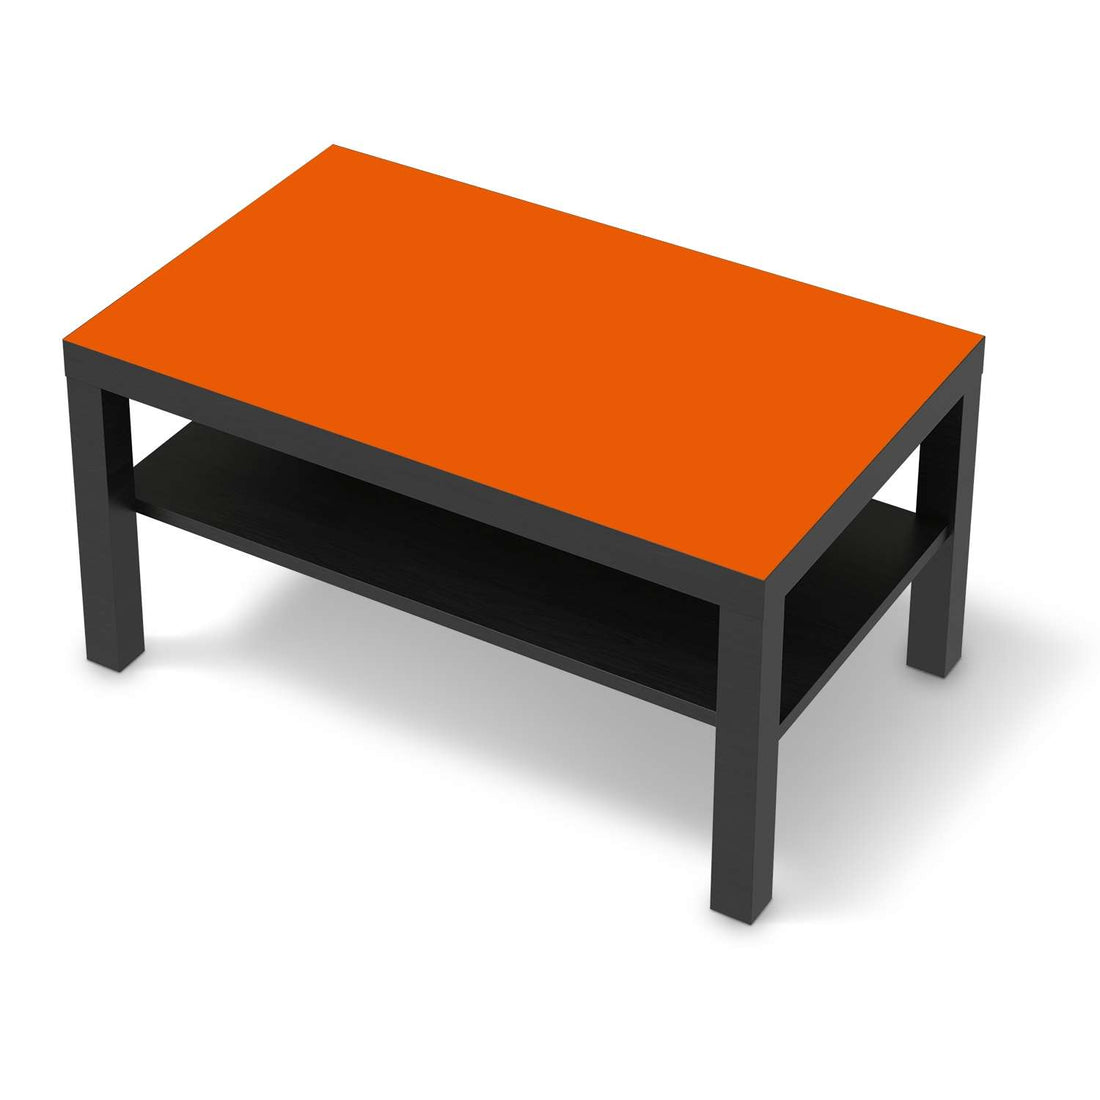 Möbelfolie Orange Dark - IKEA Lack Tisch 90x55 cm - schwarz